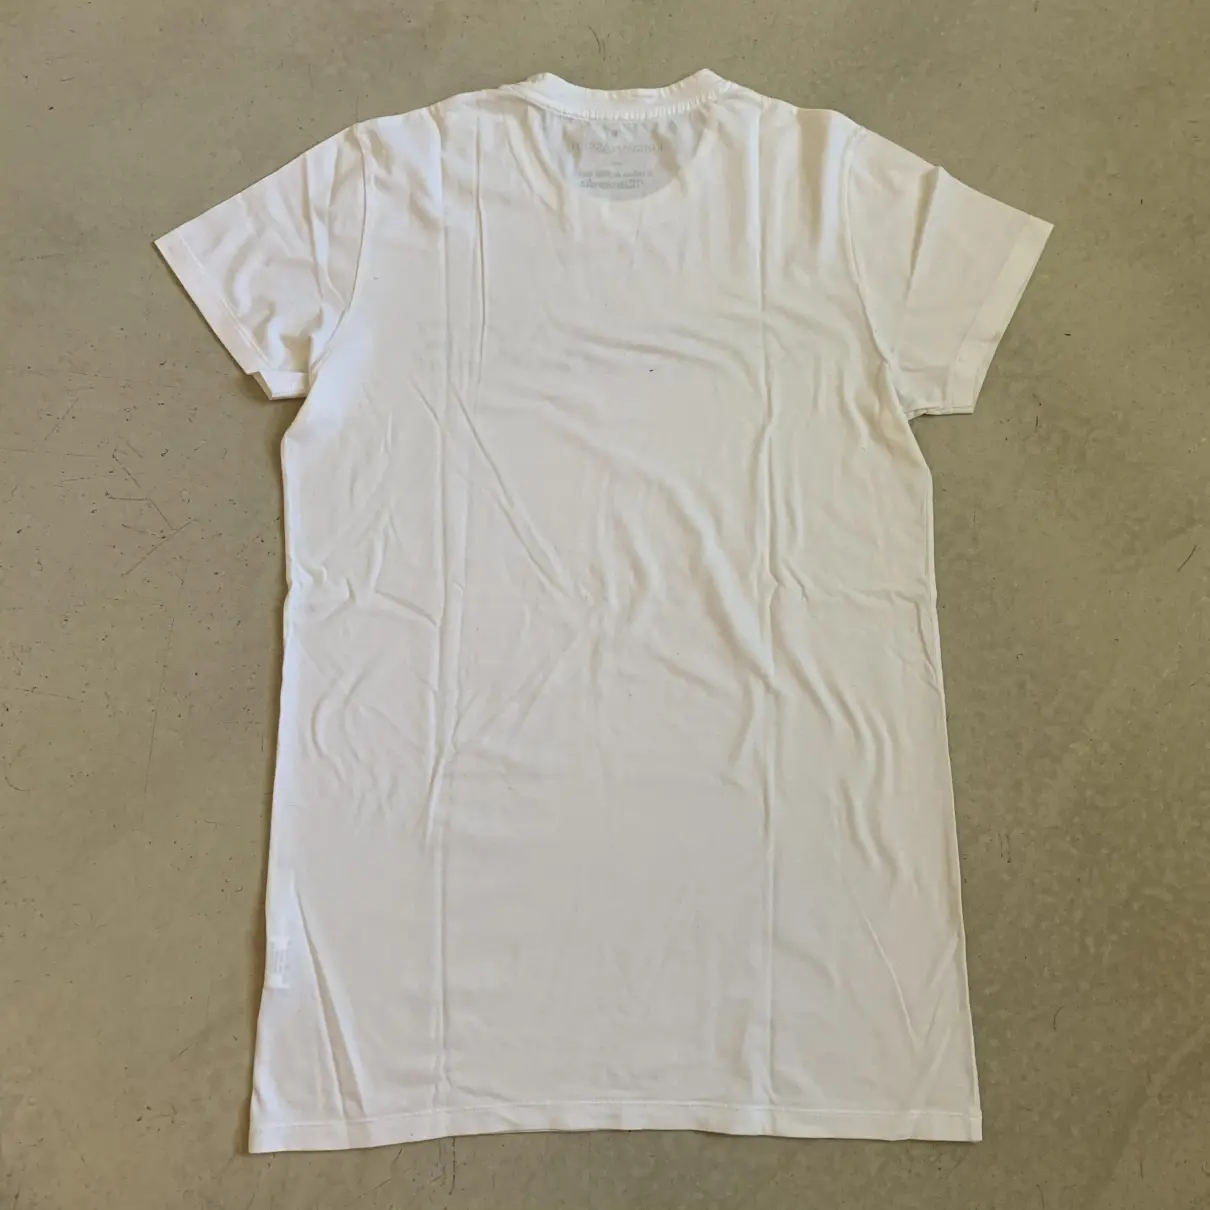 Buy Kris Van Assche T-shirt online